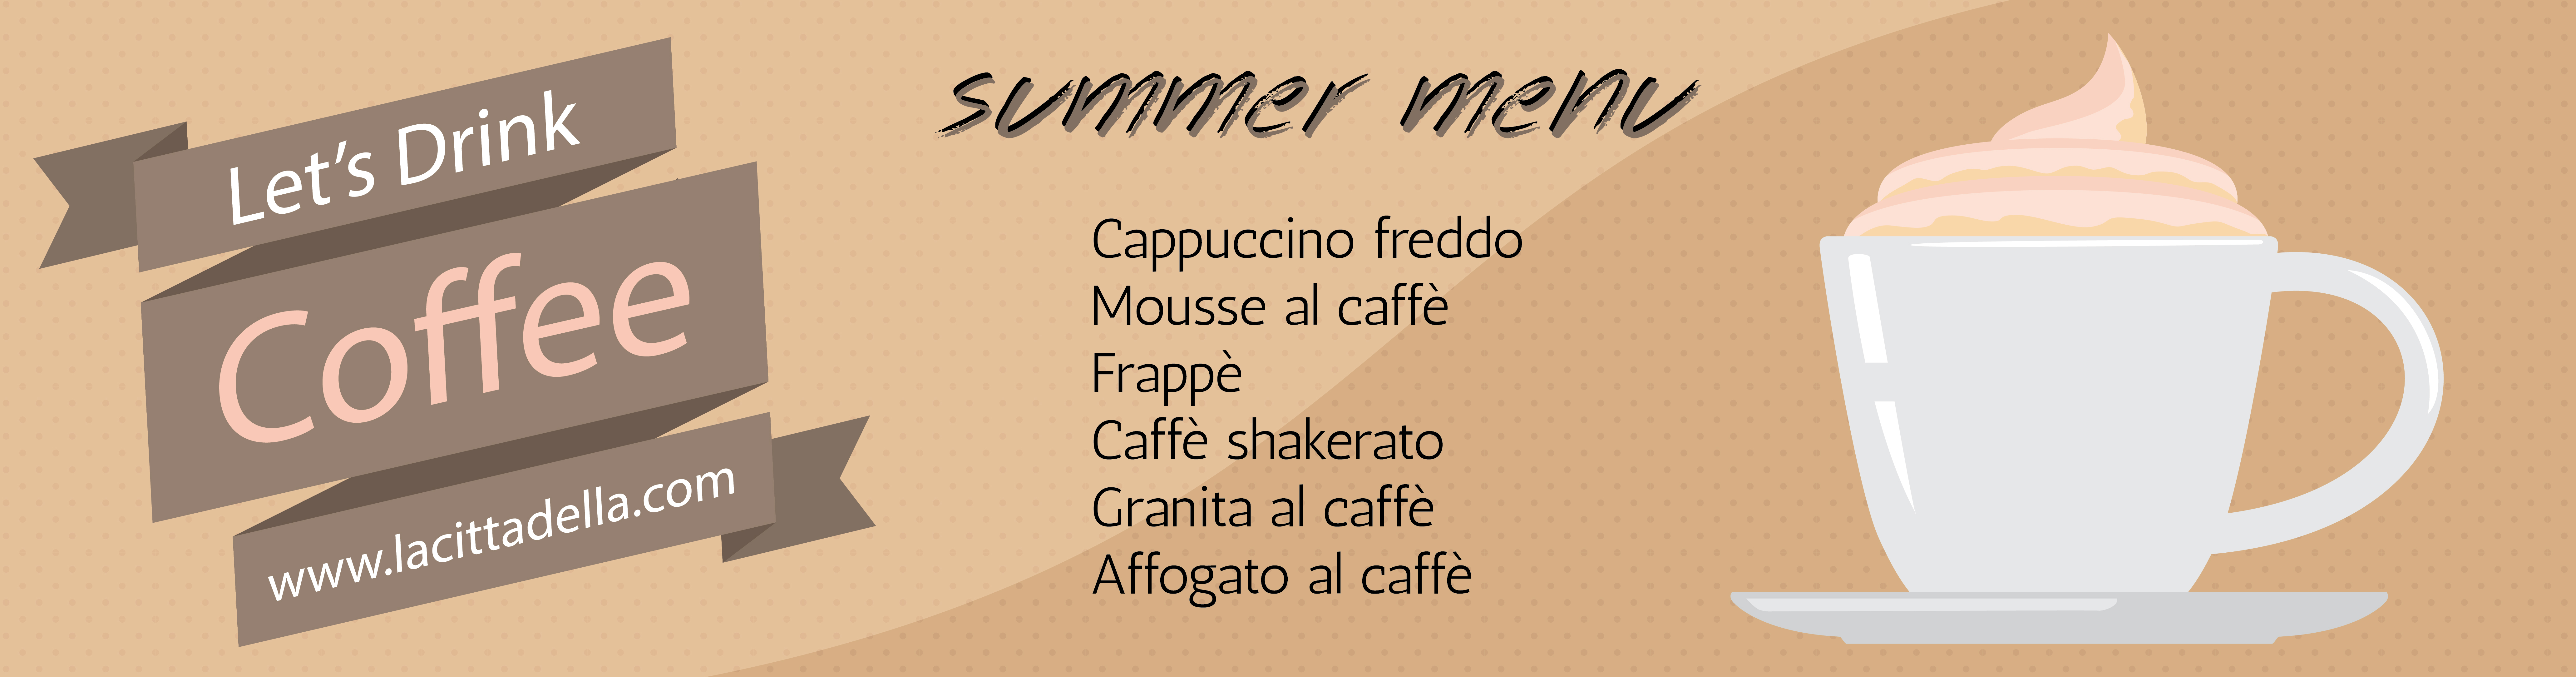 La-cittadella-caffè-consigli-ricette-agosto-caffè-estivo